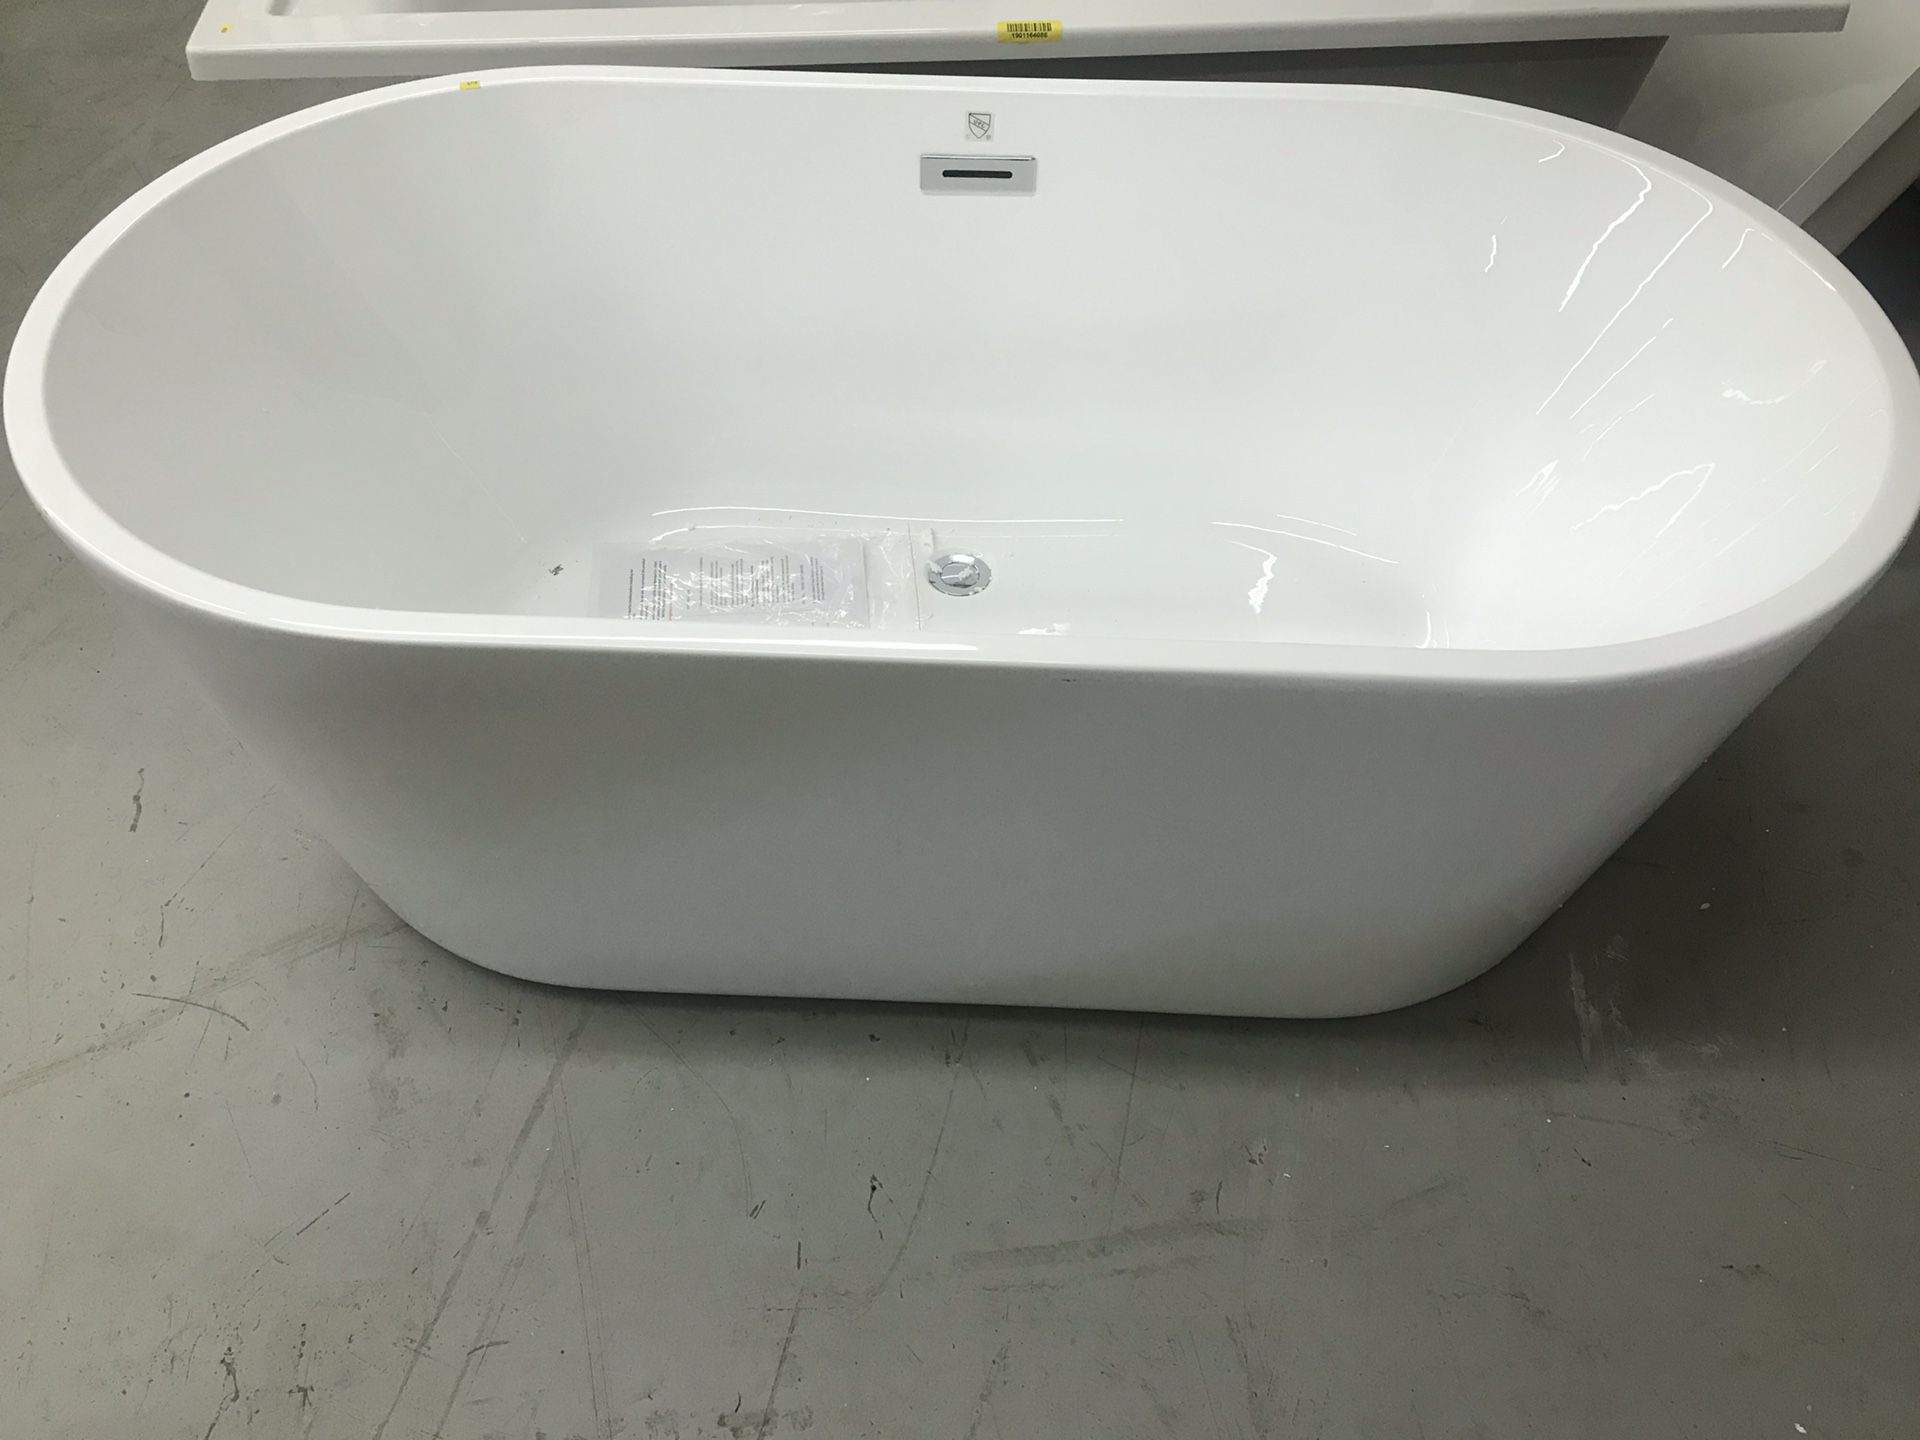 Standalone tub